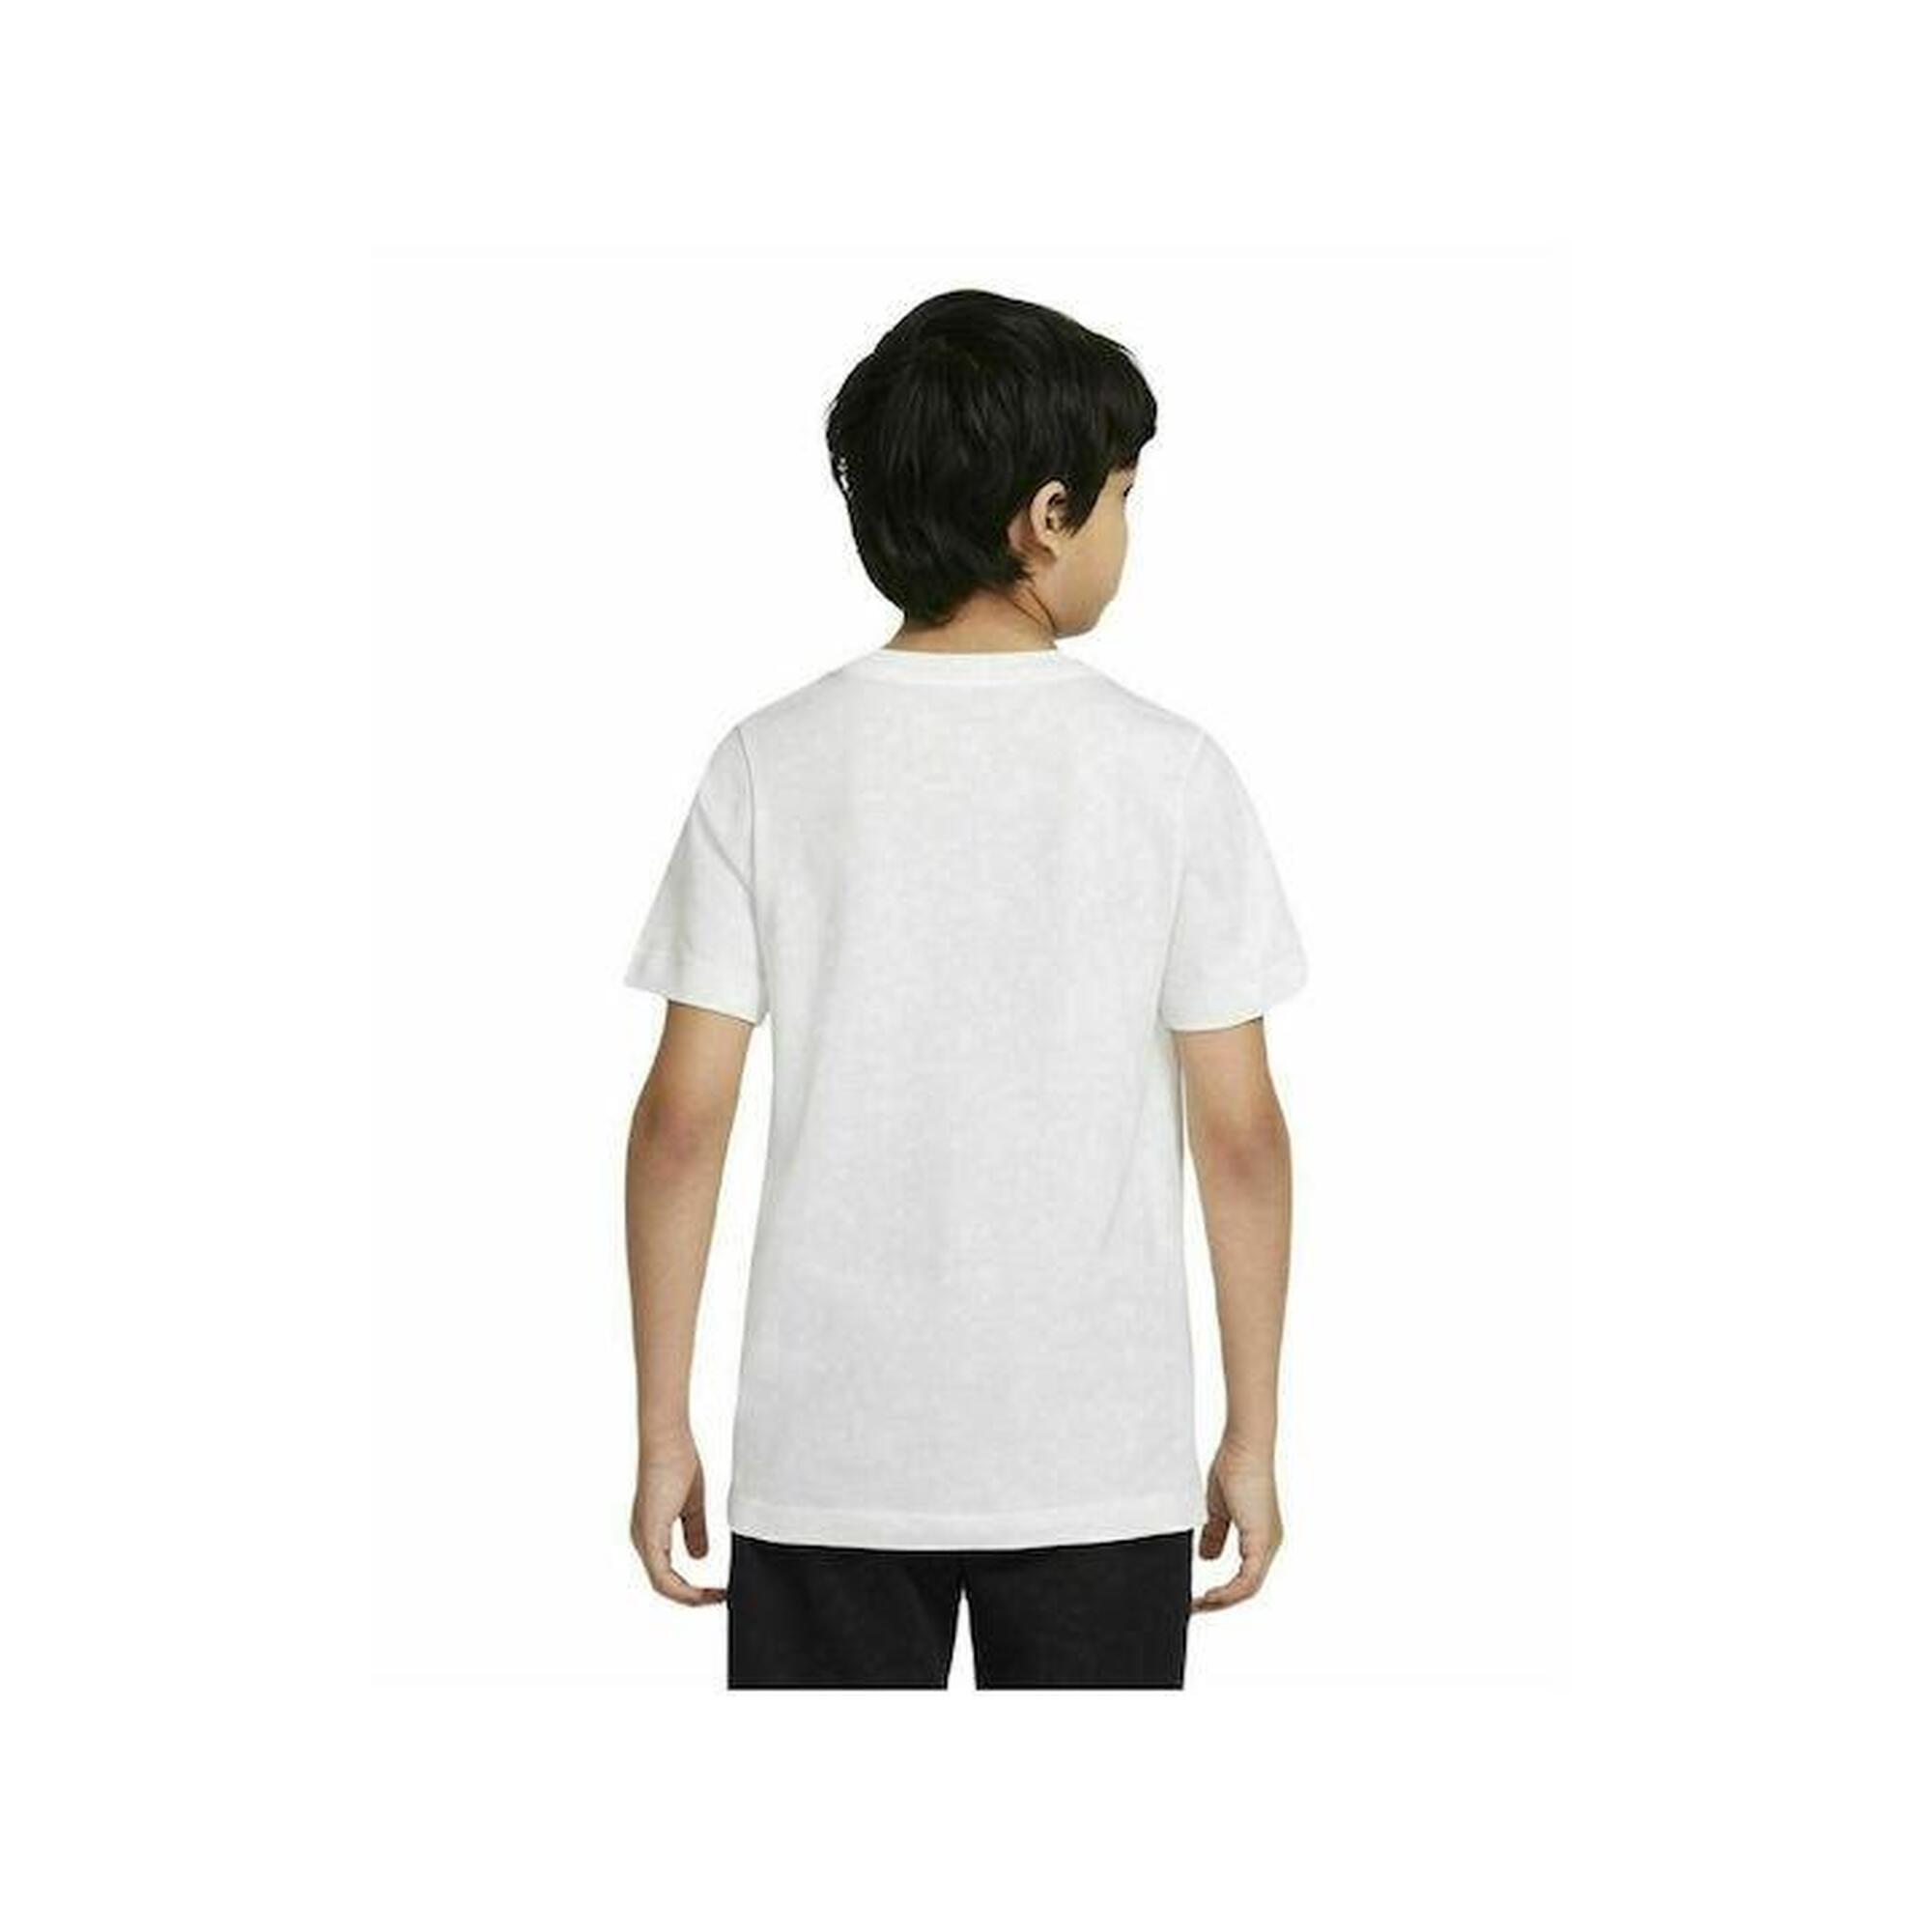 T-shirt ragazzo nike sportswear tee core bianco